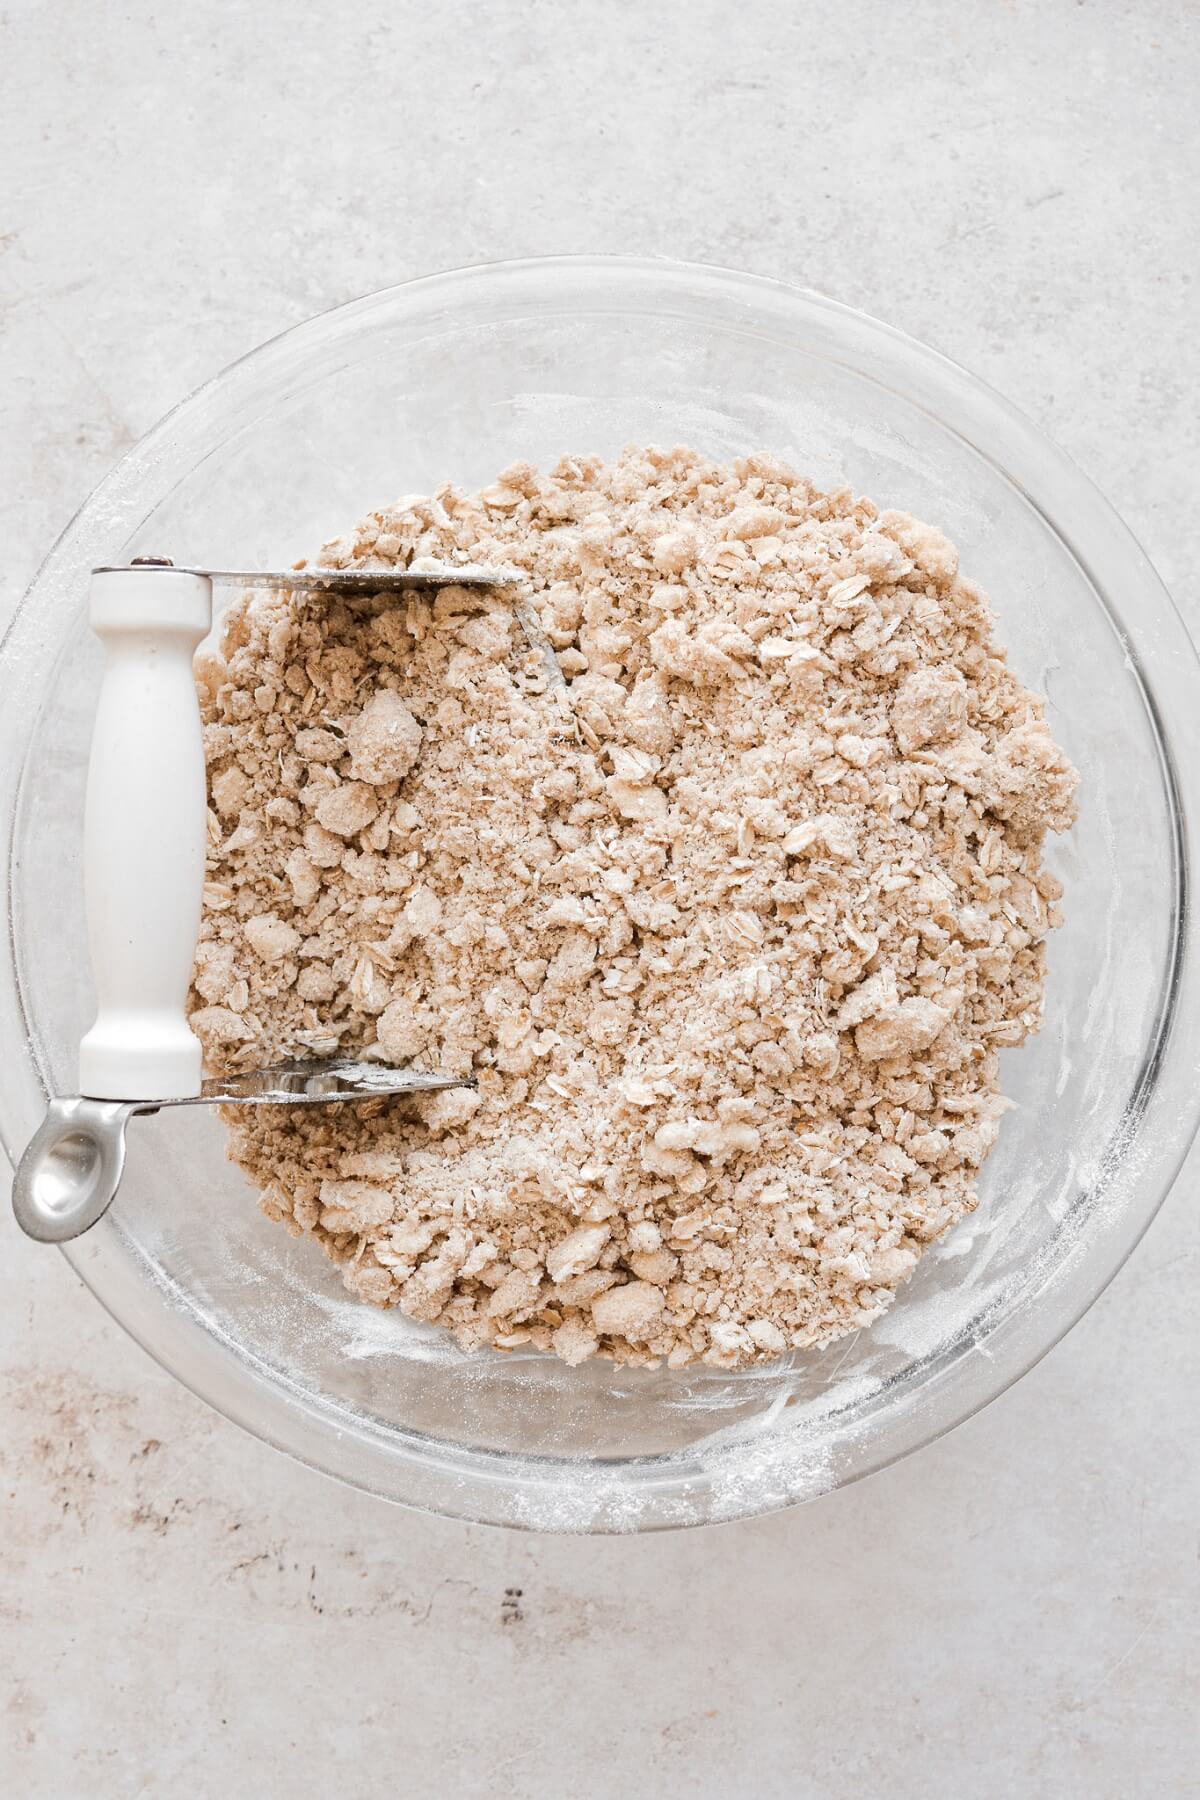 Step 4 for making oatmeal crumble crust.